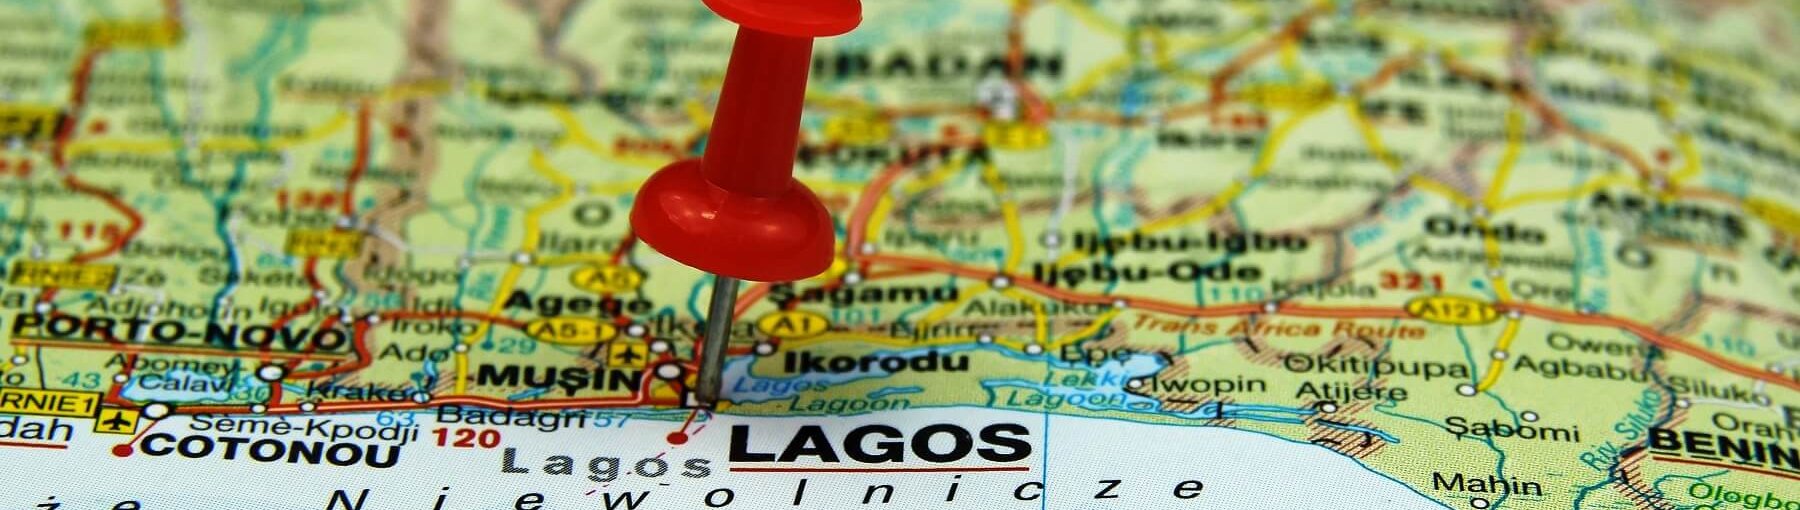 Lagos to stan w południowo-zachodniej części Nigerii. Fot. Chrupka?Shutterstock